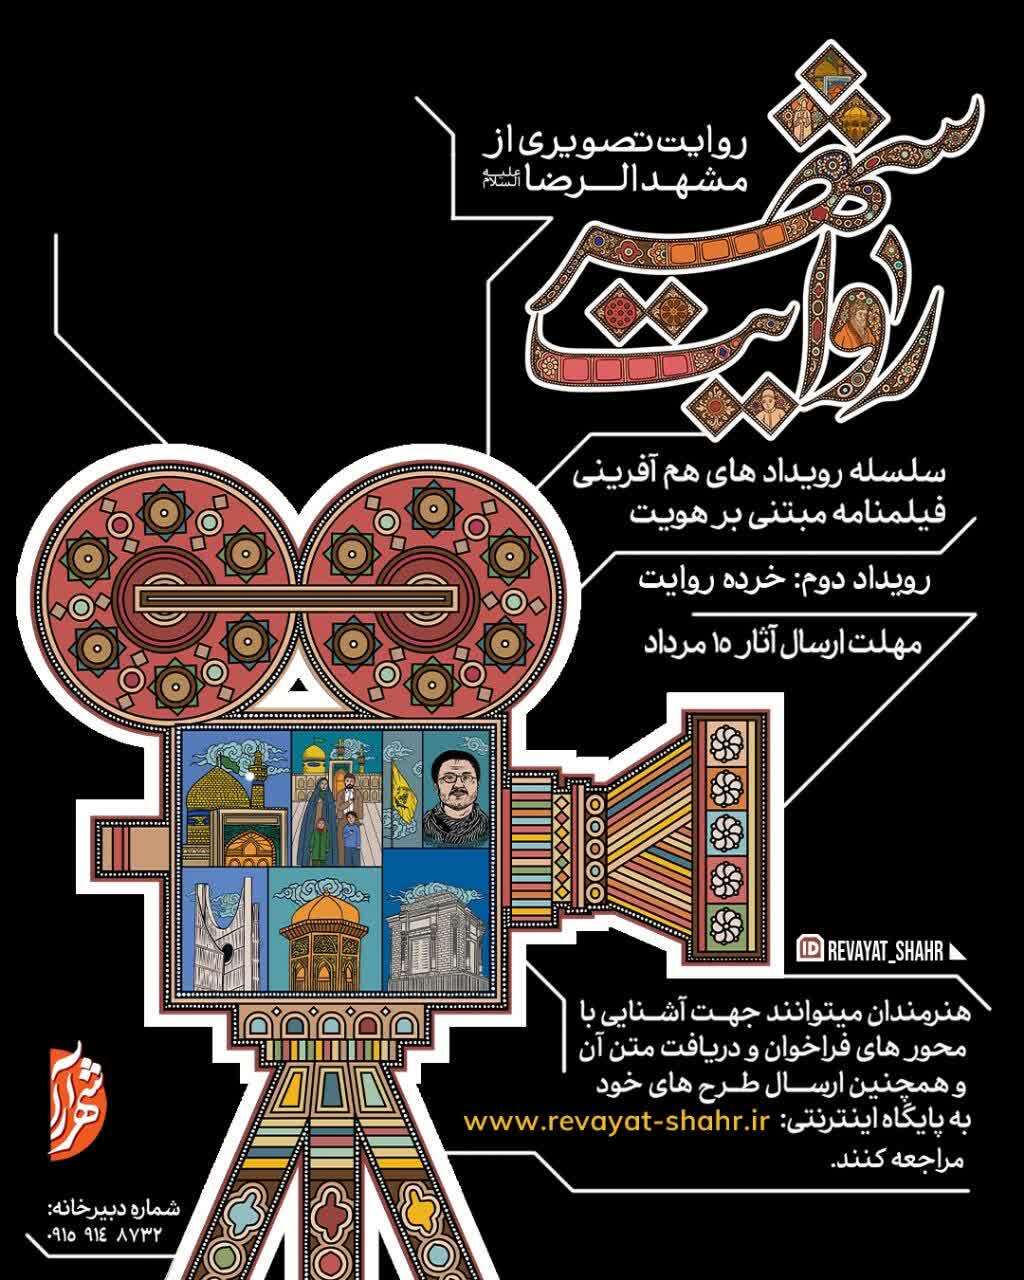 برگزاری رویداد دوم روایت شهر (خرده روایت) در مشهد مقدس